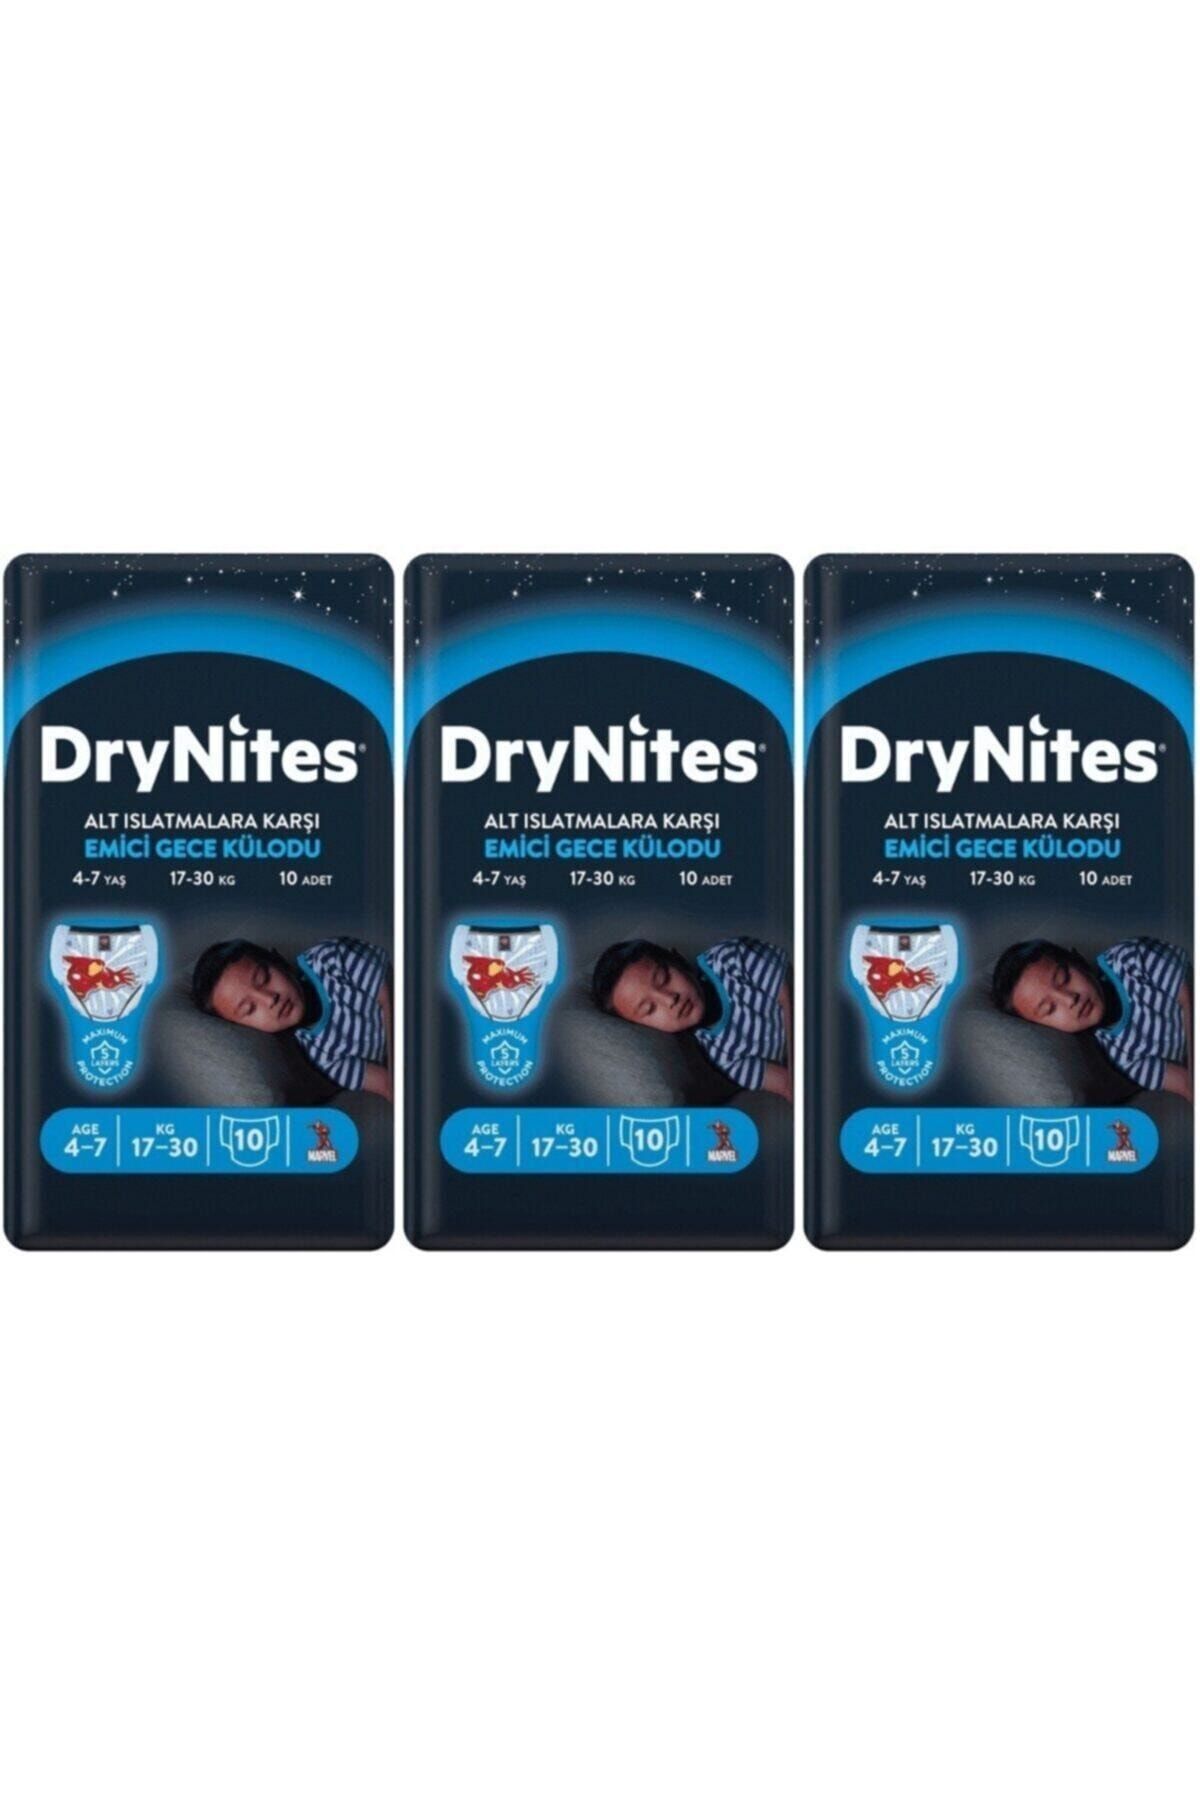 DryNites Erkek Emici Gece Külodu 4-7 Yaş 30 Adet